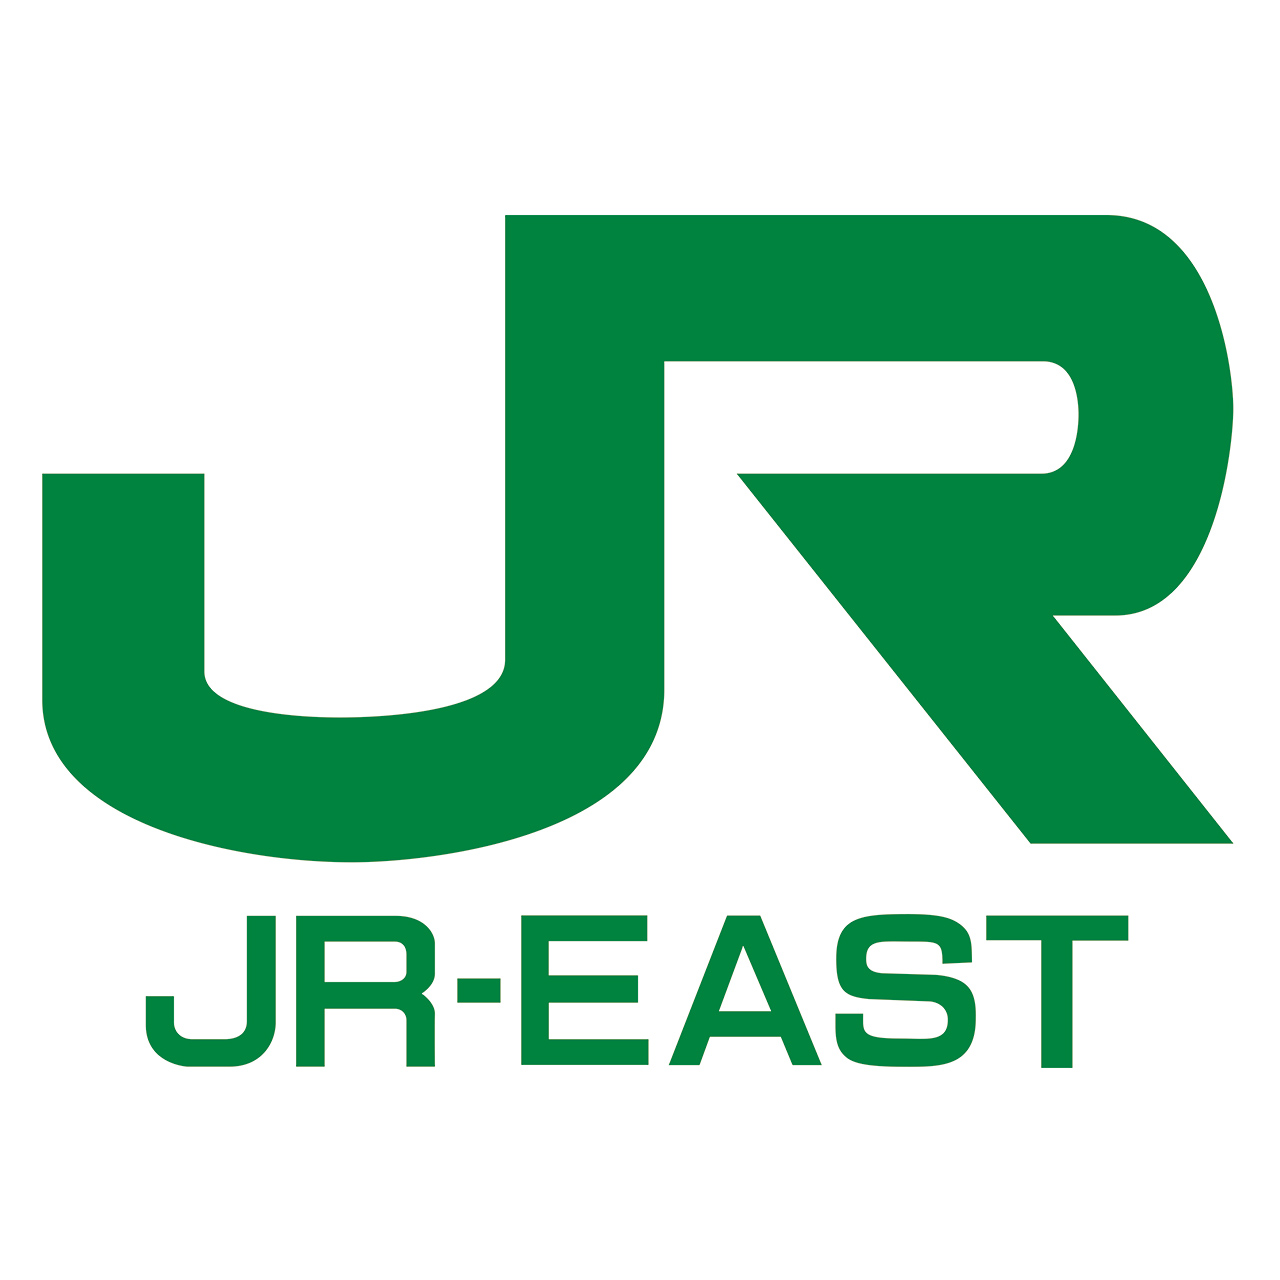 JR EAST PASS มีการปรับ ราคา ตั้งแต่วันที่ 1 เมษายน 2021 นี้เป็นต้นไป